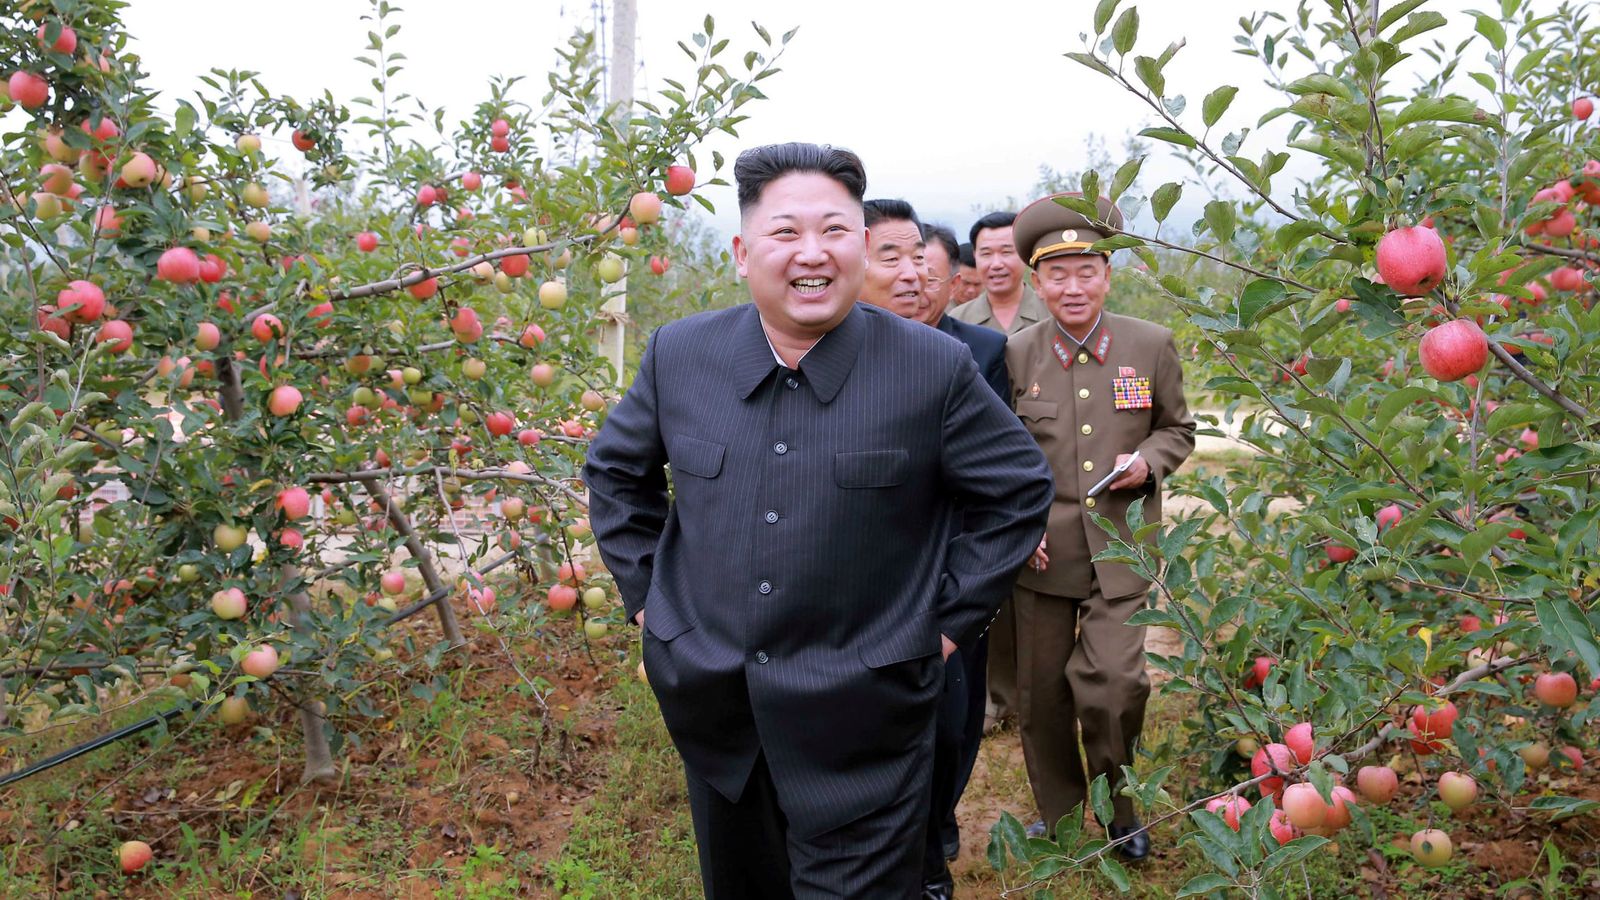 Foto: kim Jong-un durante una visita a una granja, en una imagen distribuida por el Gobierno norcoreano (Reuters).